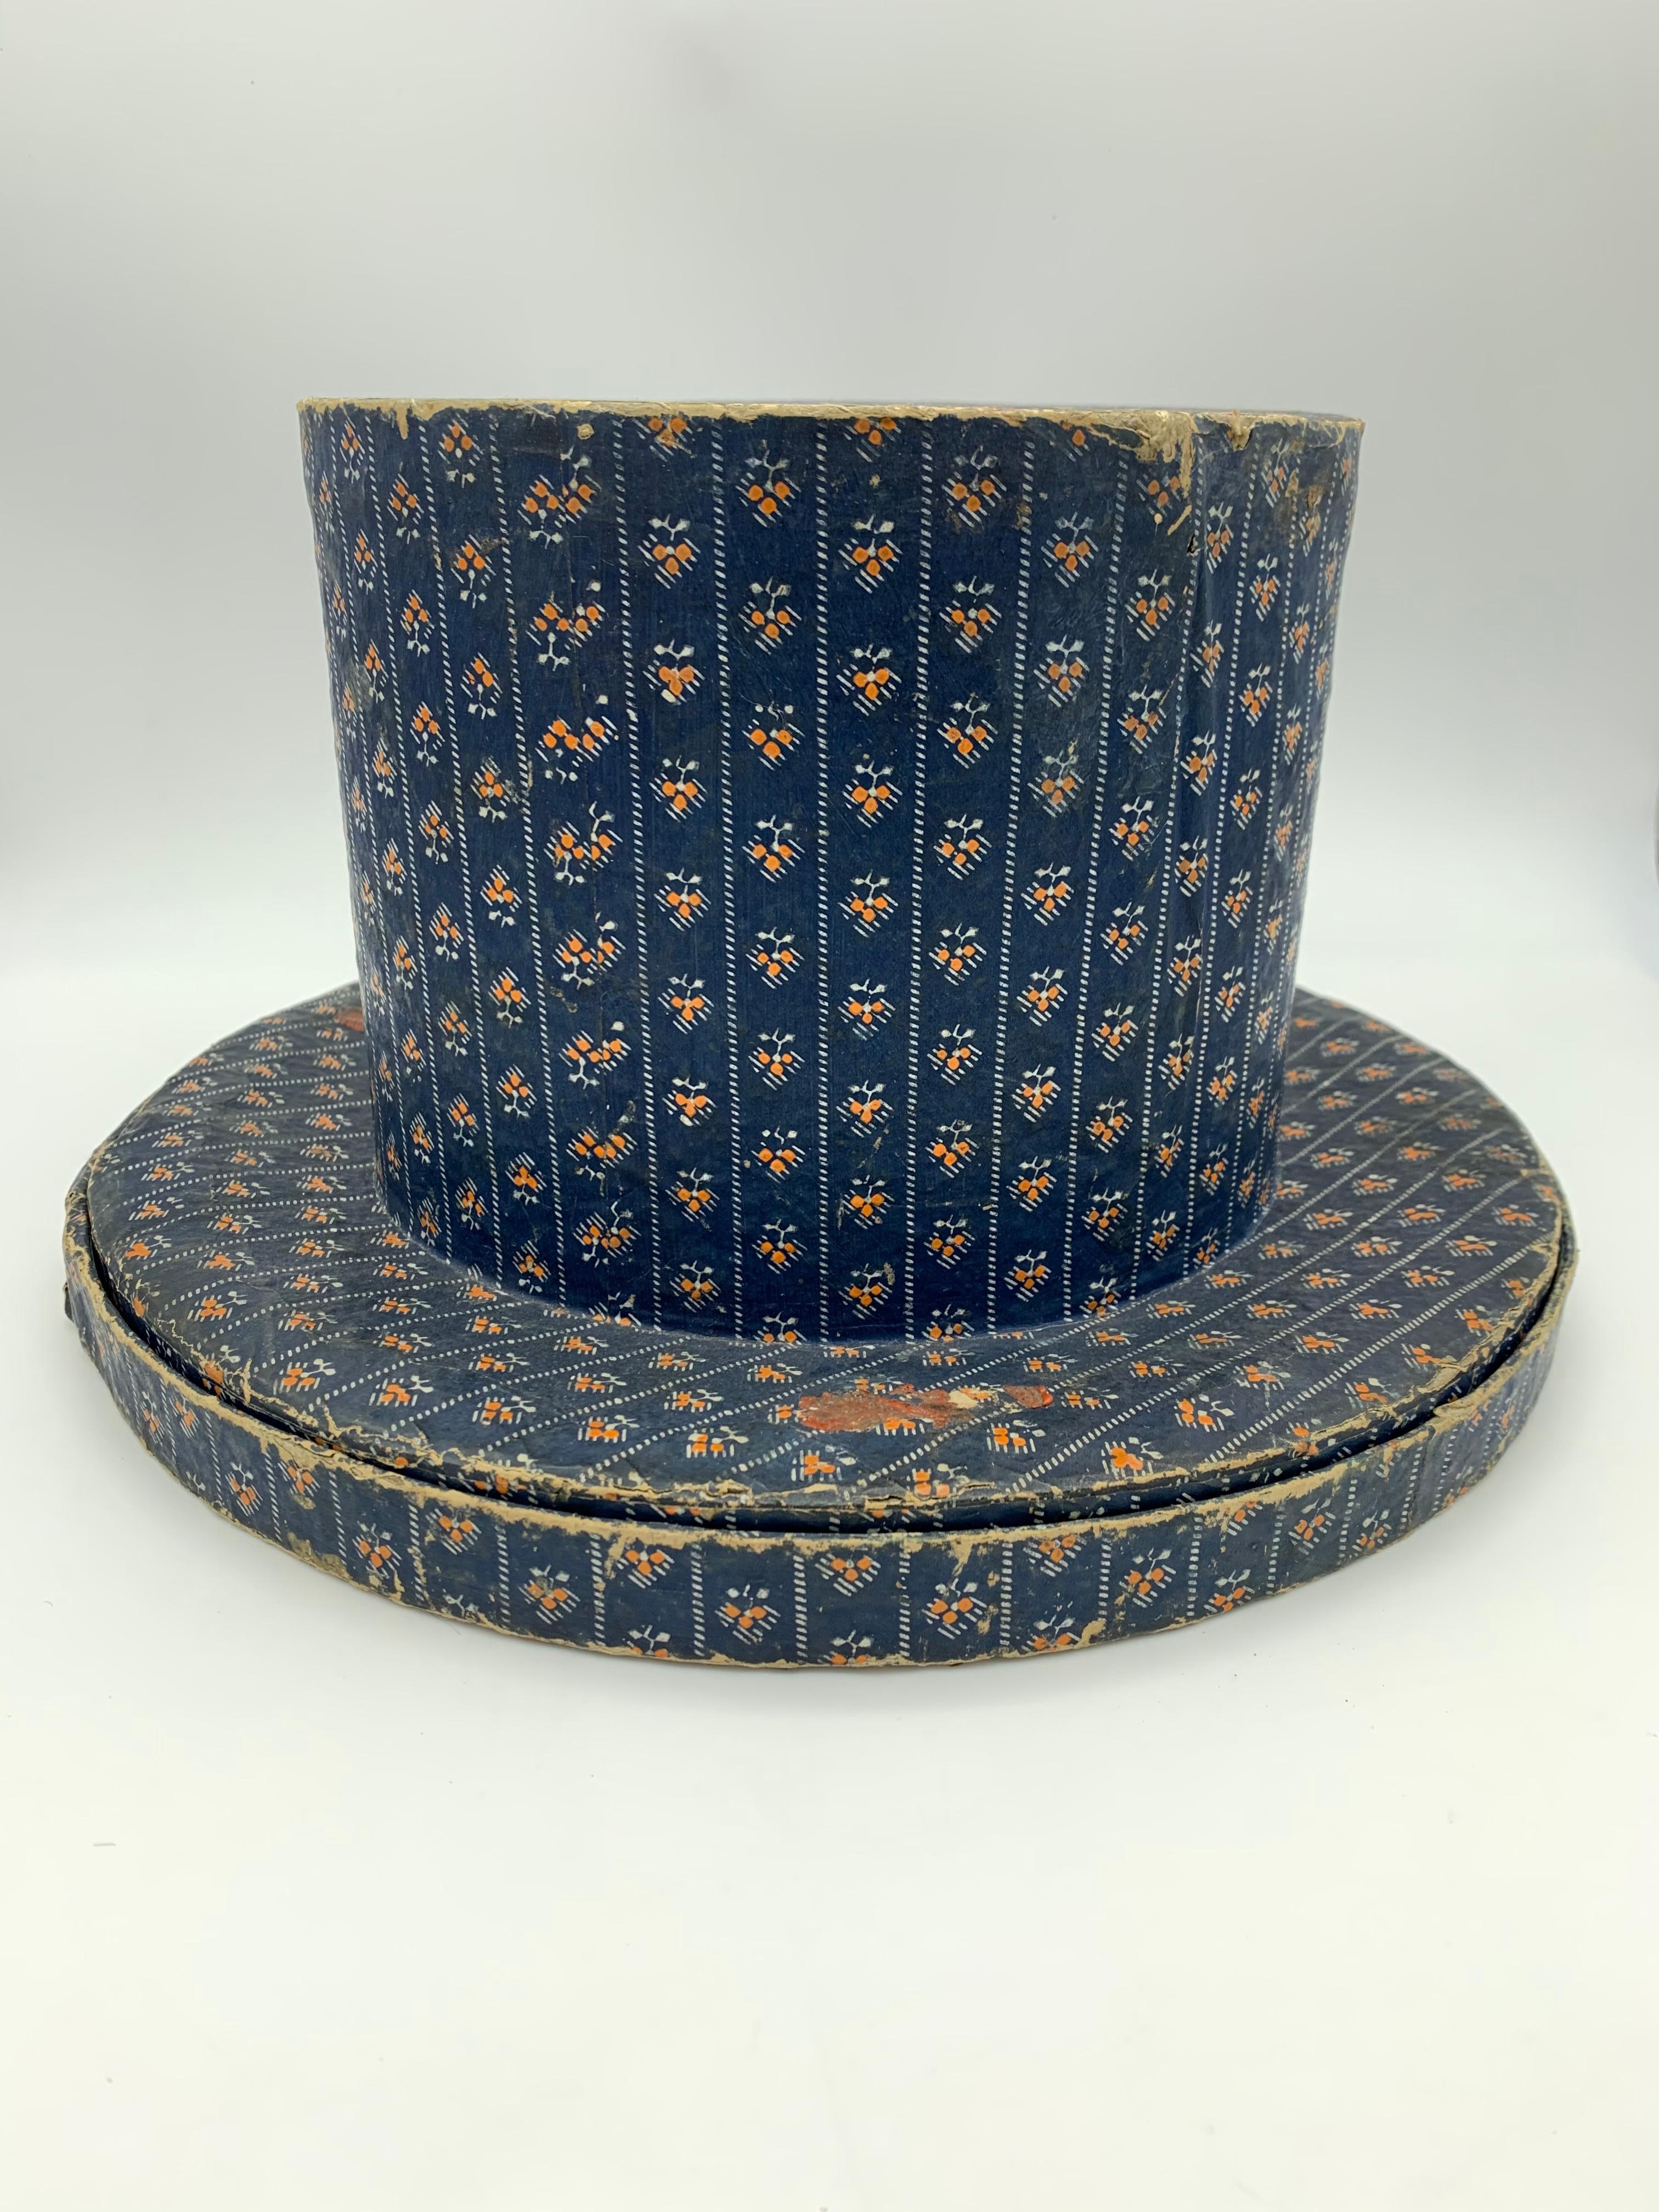 Très rare boîte à chapeau pour un chapeau haut de forme de gentleman, réalisée en carton imprimé à la main.
Compte tenu de la fragilité du matériau, cet objet très rare est dans un état étonnamment bon. Il ne reste probablement plus beaucoup